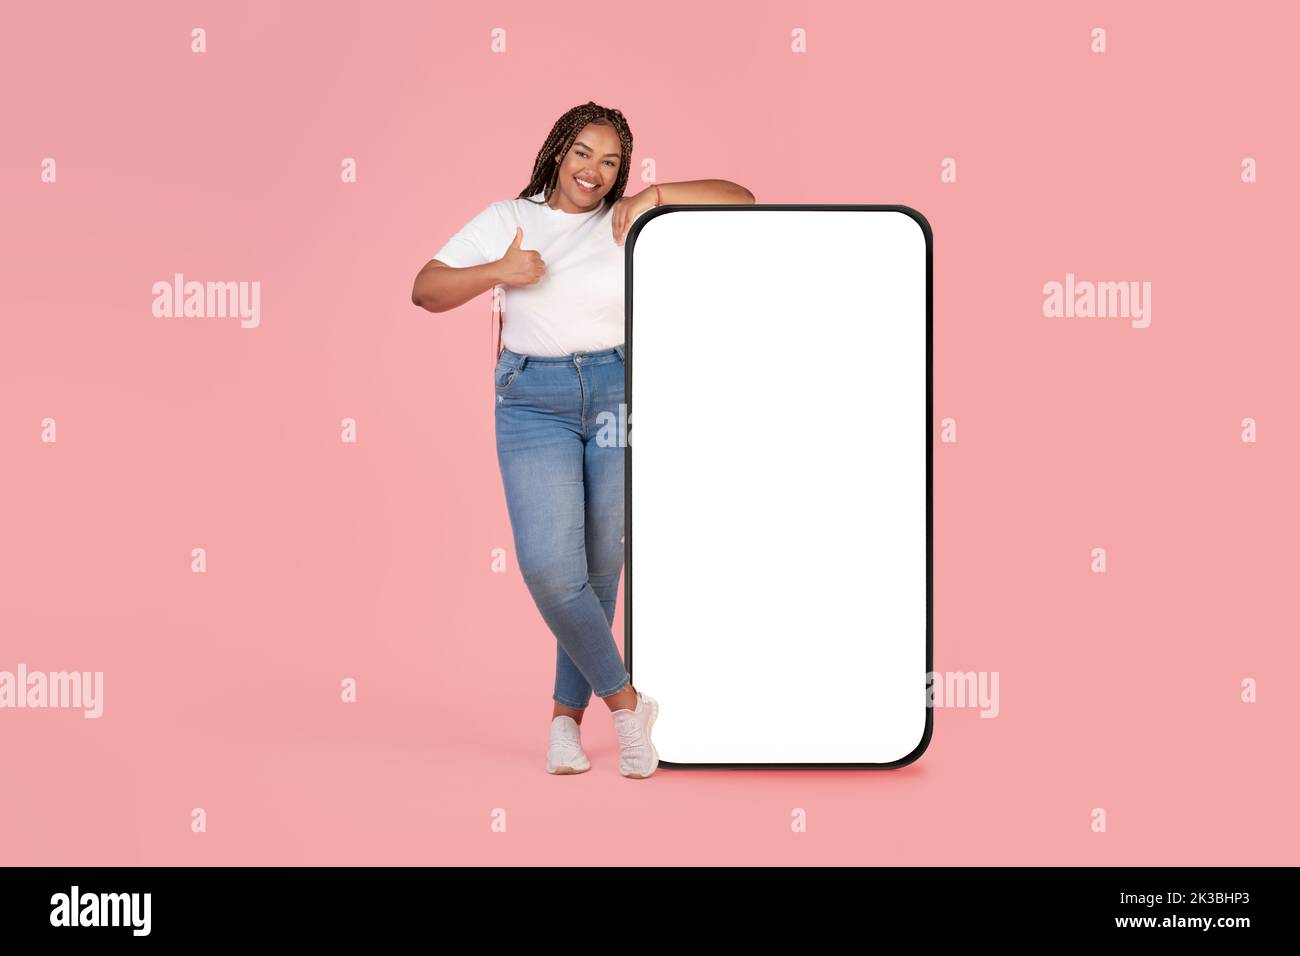 Donna africana che appoggia sullo schermo del cellulare gesturing come, sfondo rosa Foto Stock